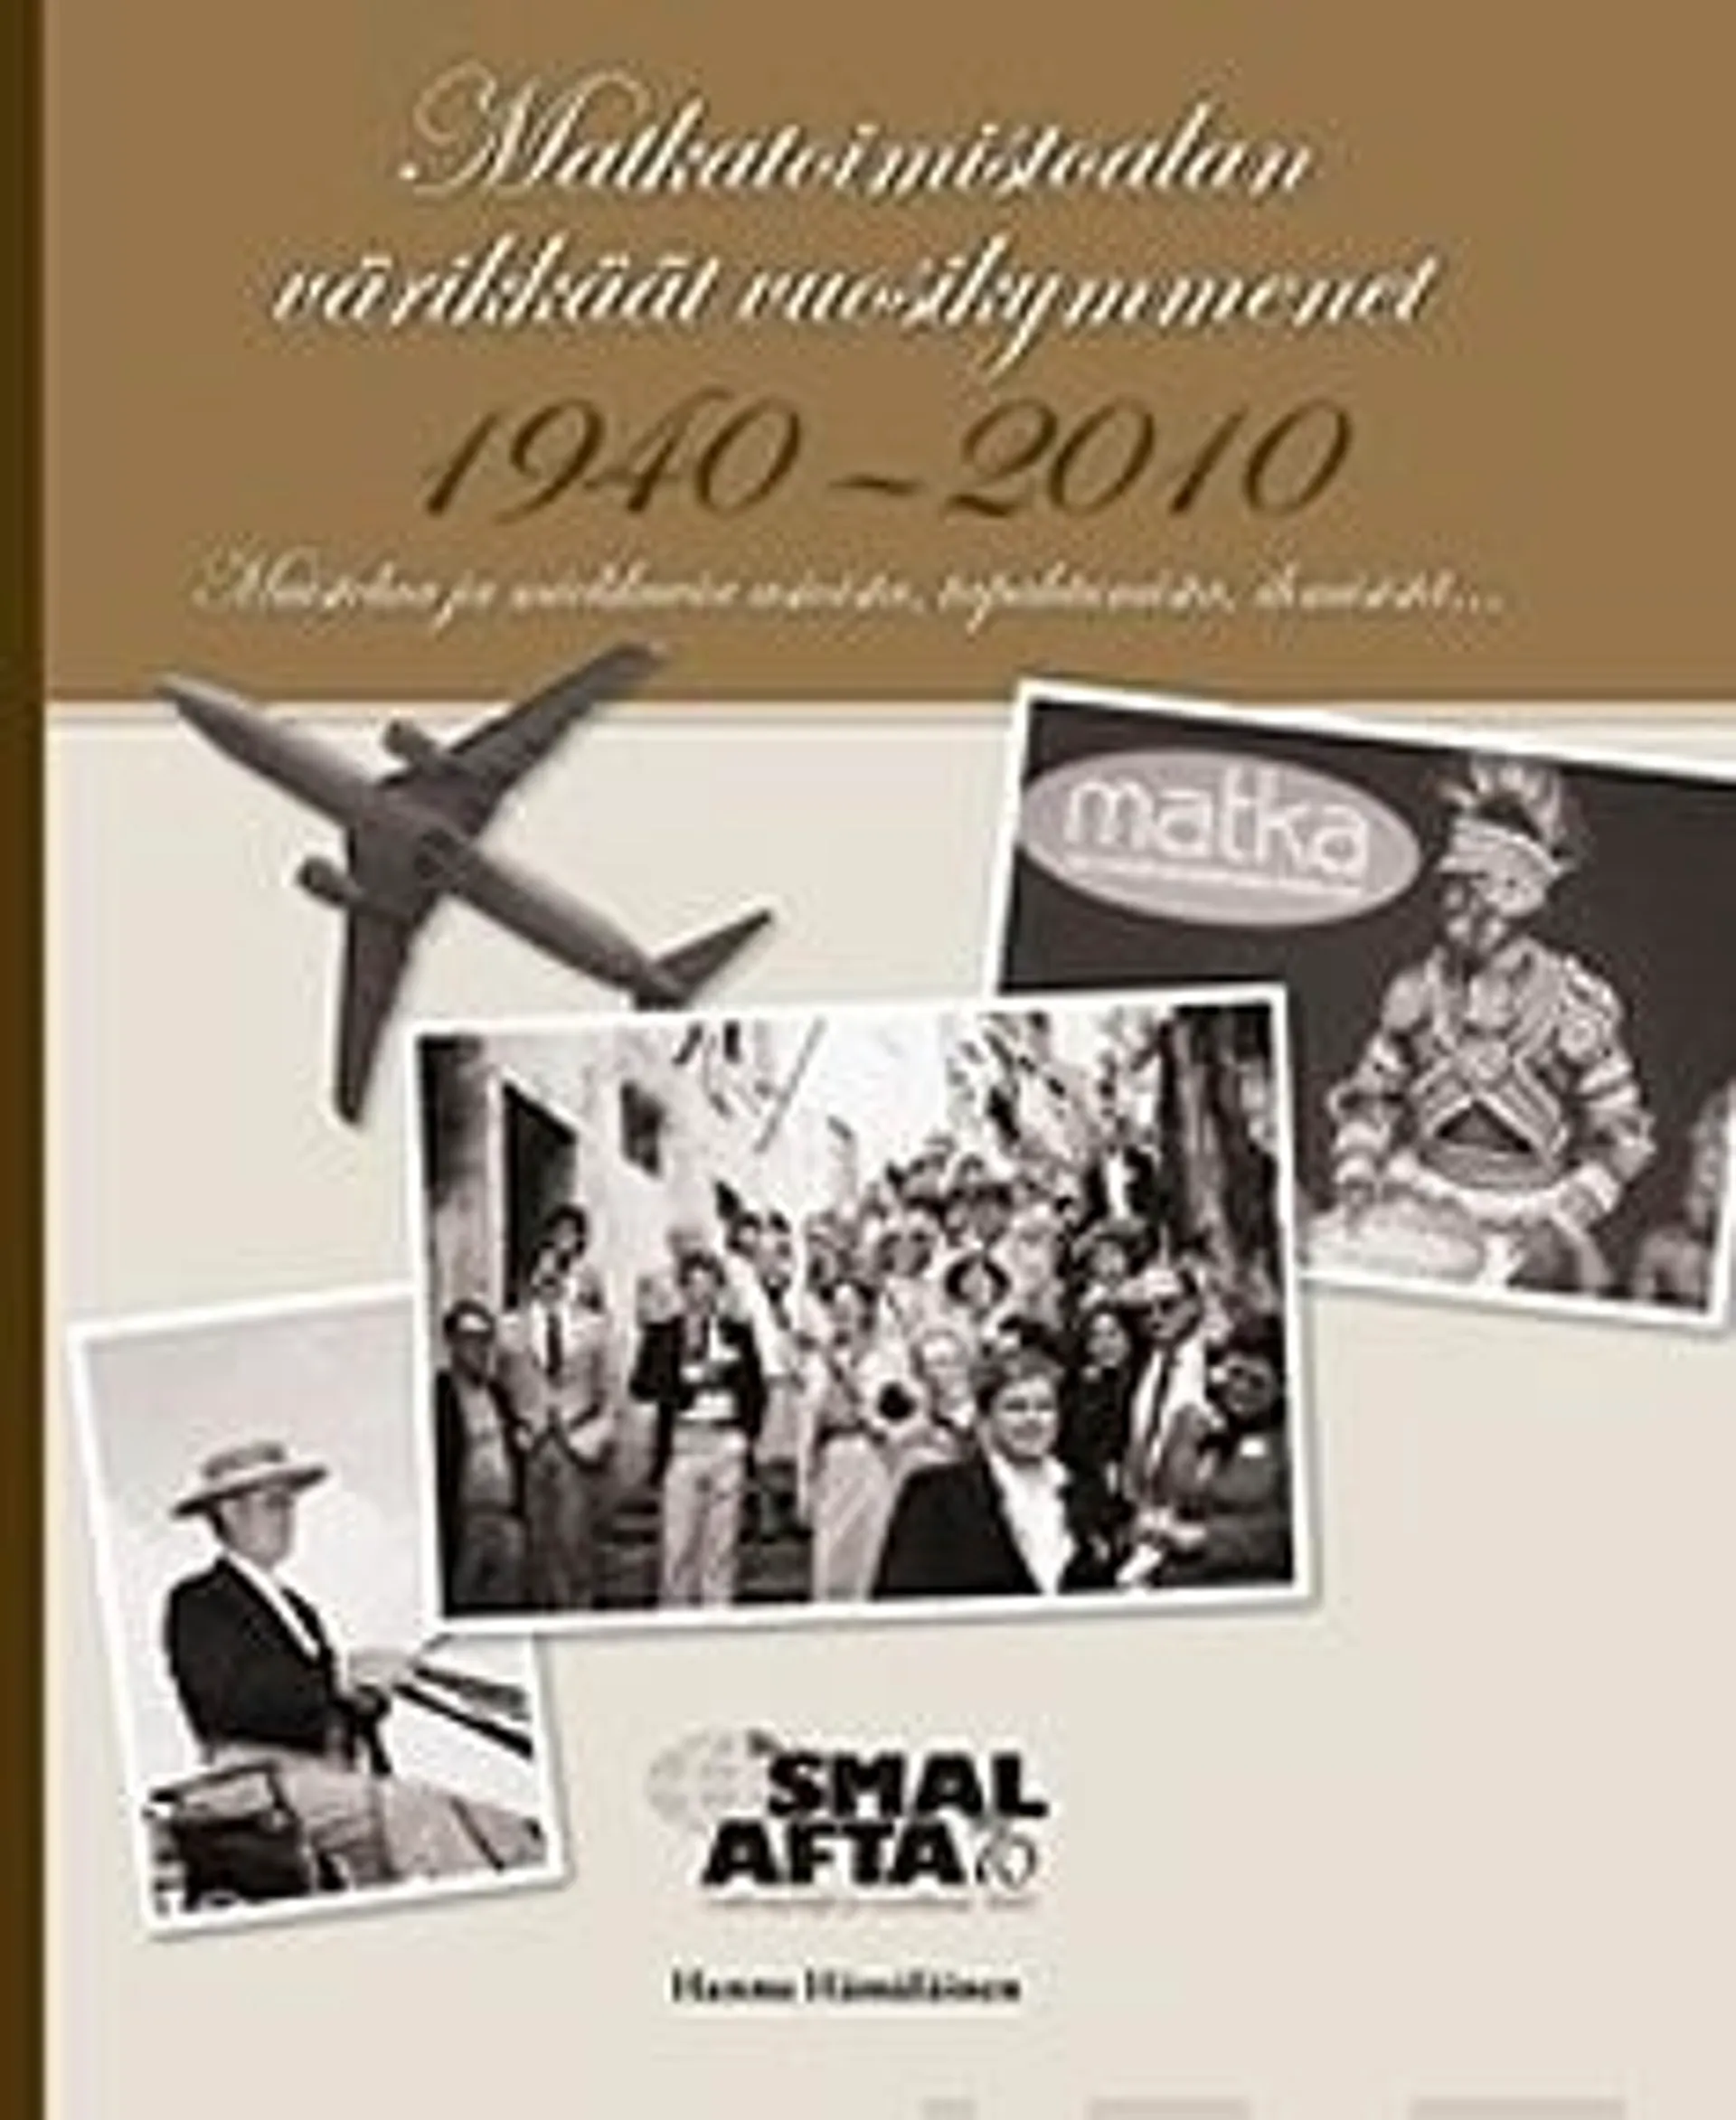 Hämäläinen, Matkatoimiston värikkäät vuosikymmenet 1940-2010